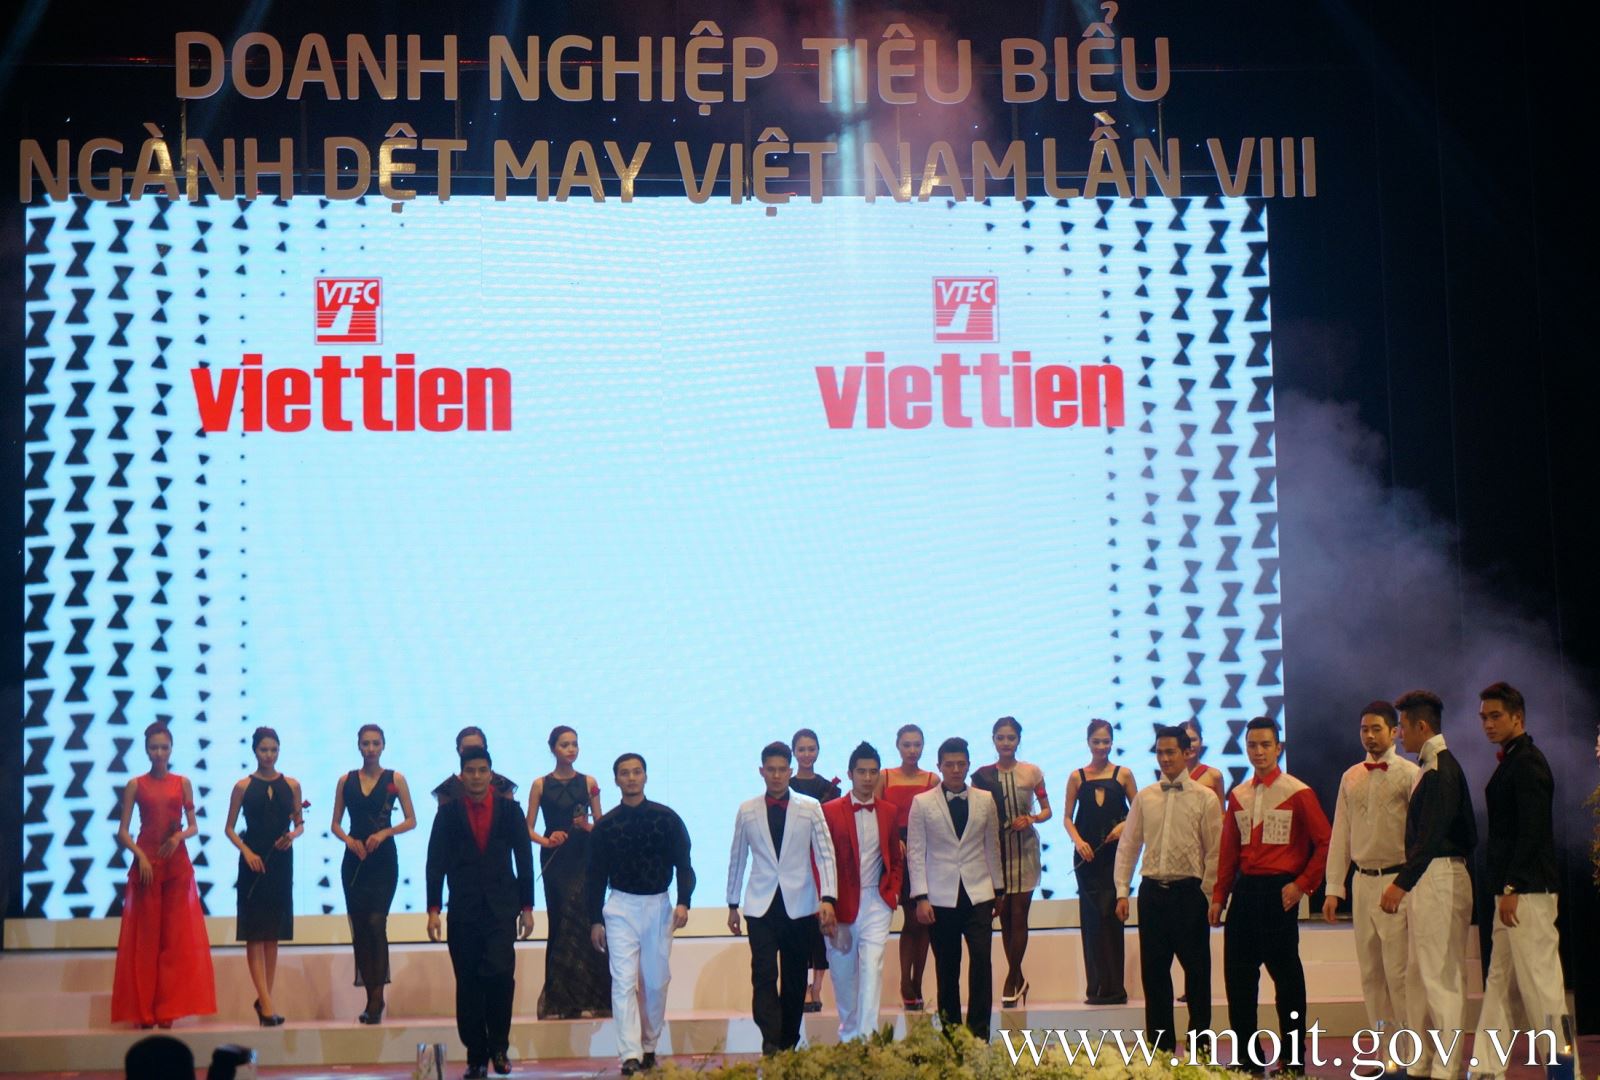 May Việt Tiến là doanh nghiệp lớn trong ngành dệt may Việt Nam, với doanh thu đạt được trong năm 2015 hơn 6.300 tỷ đồng đã được công nhận ưu tiên về hải quan.